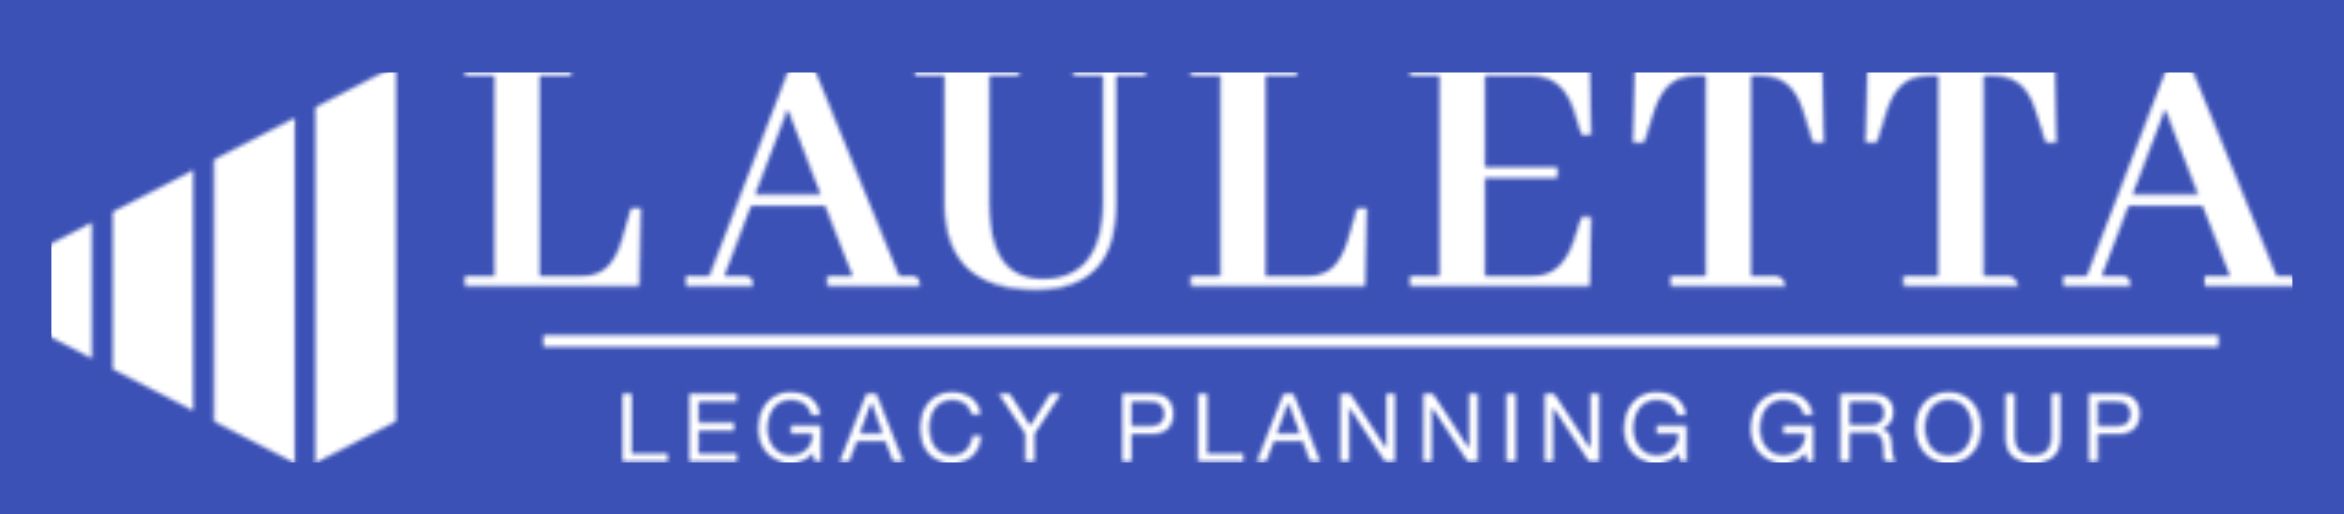 Lauletta Logo-blue bkgrn